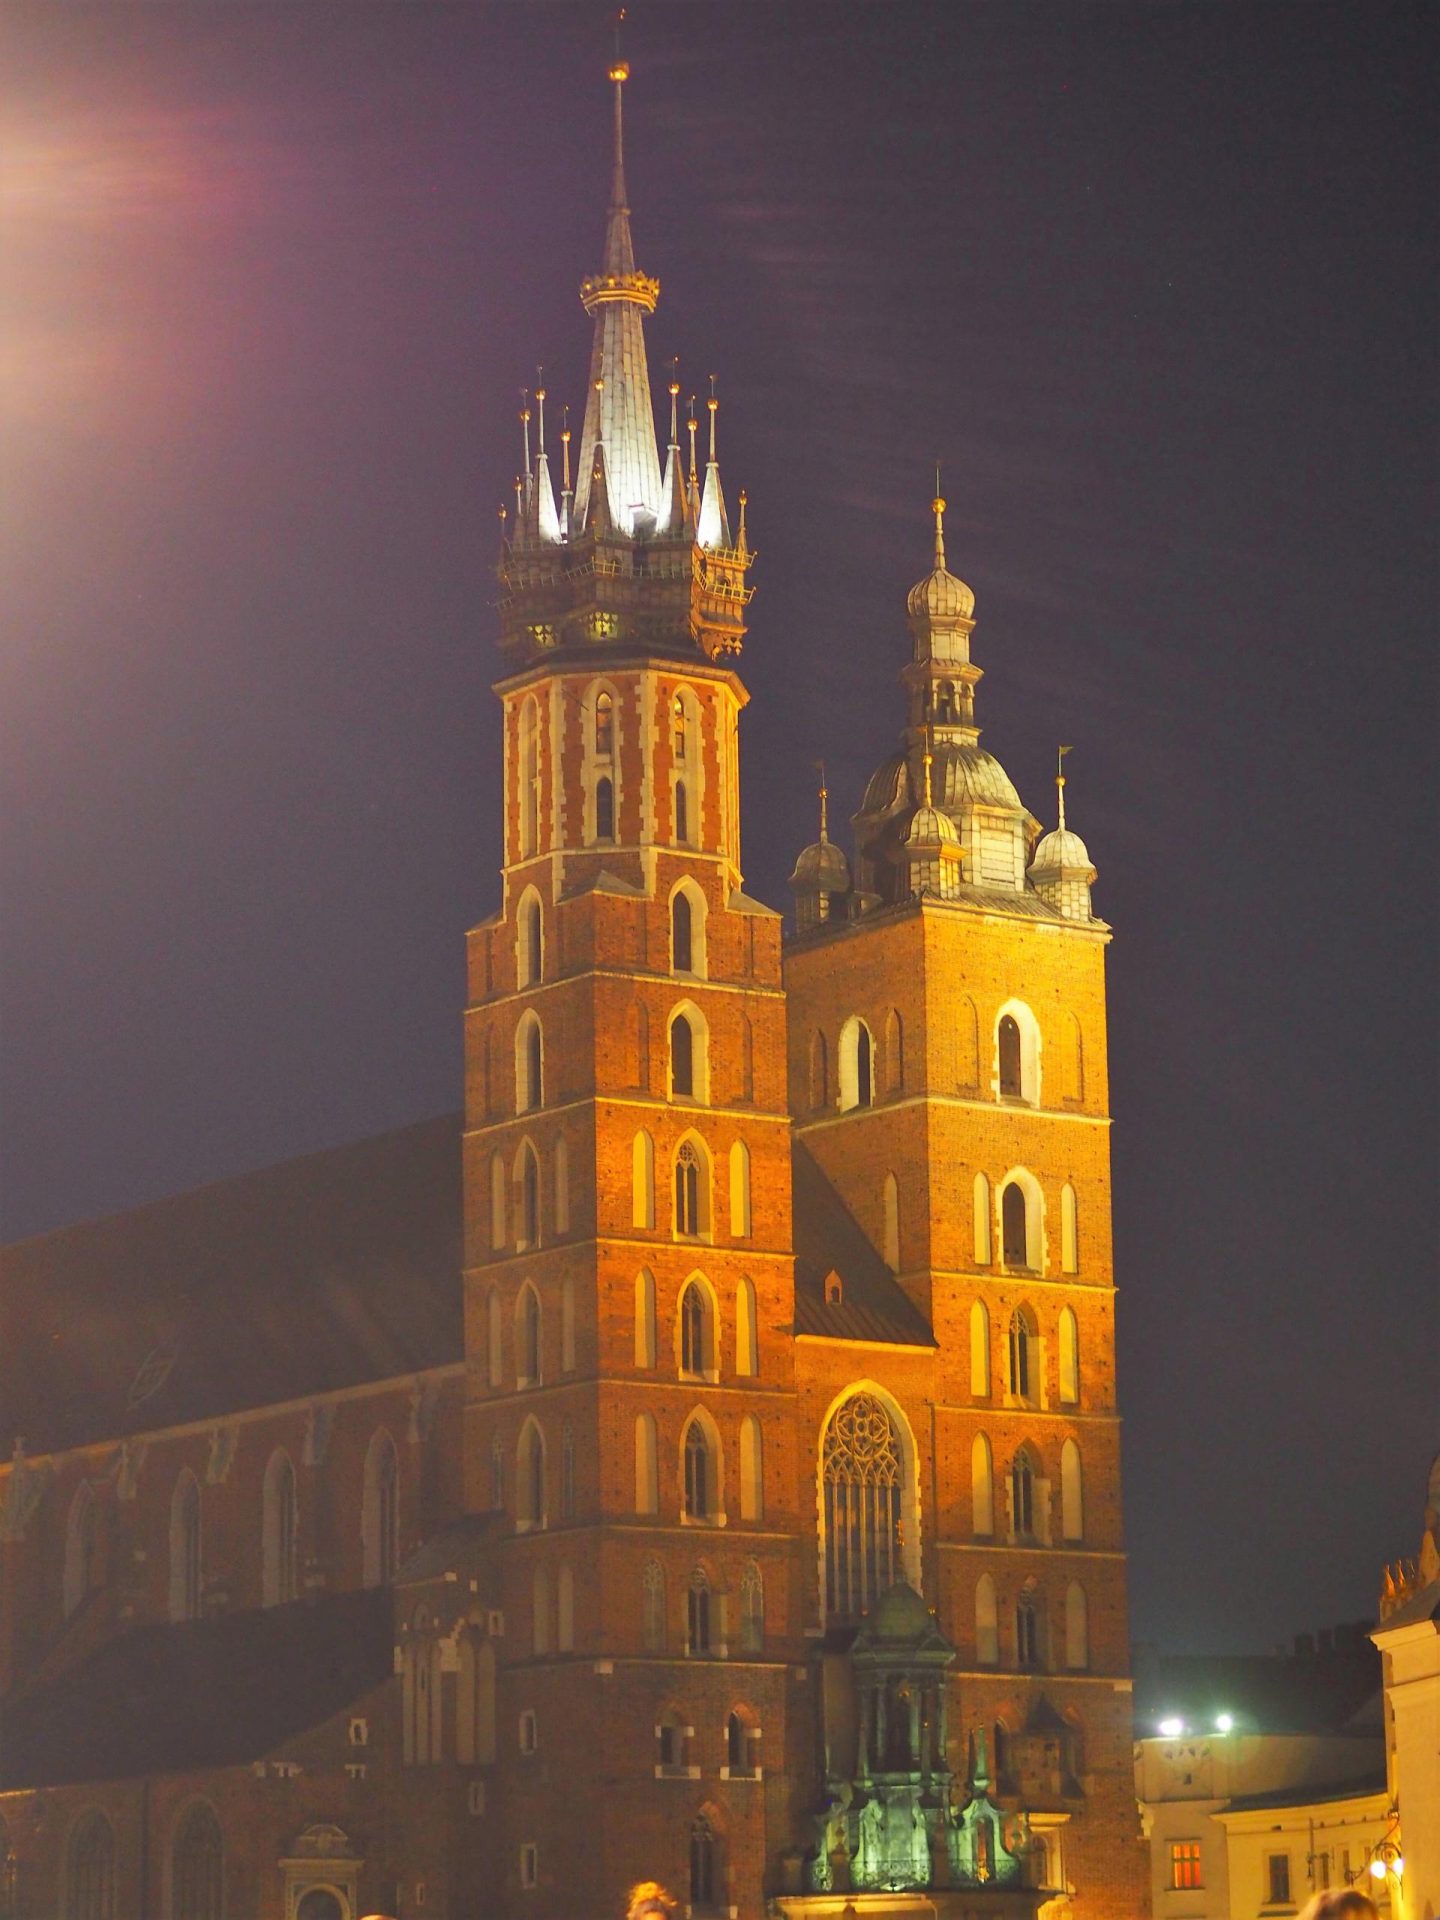 Krakow, Poland: Old Town